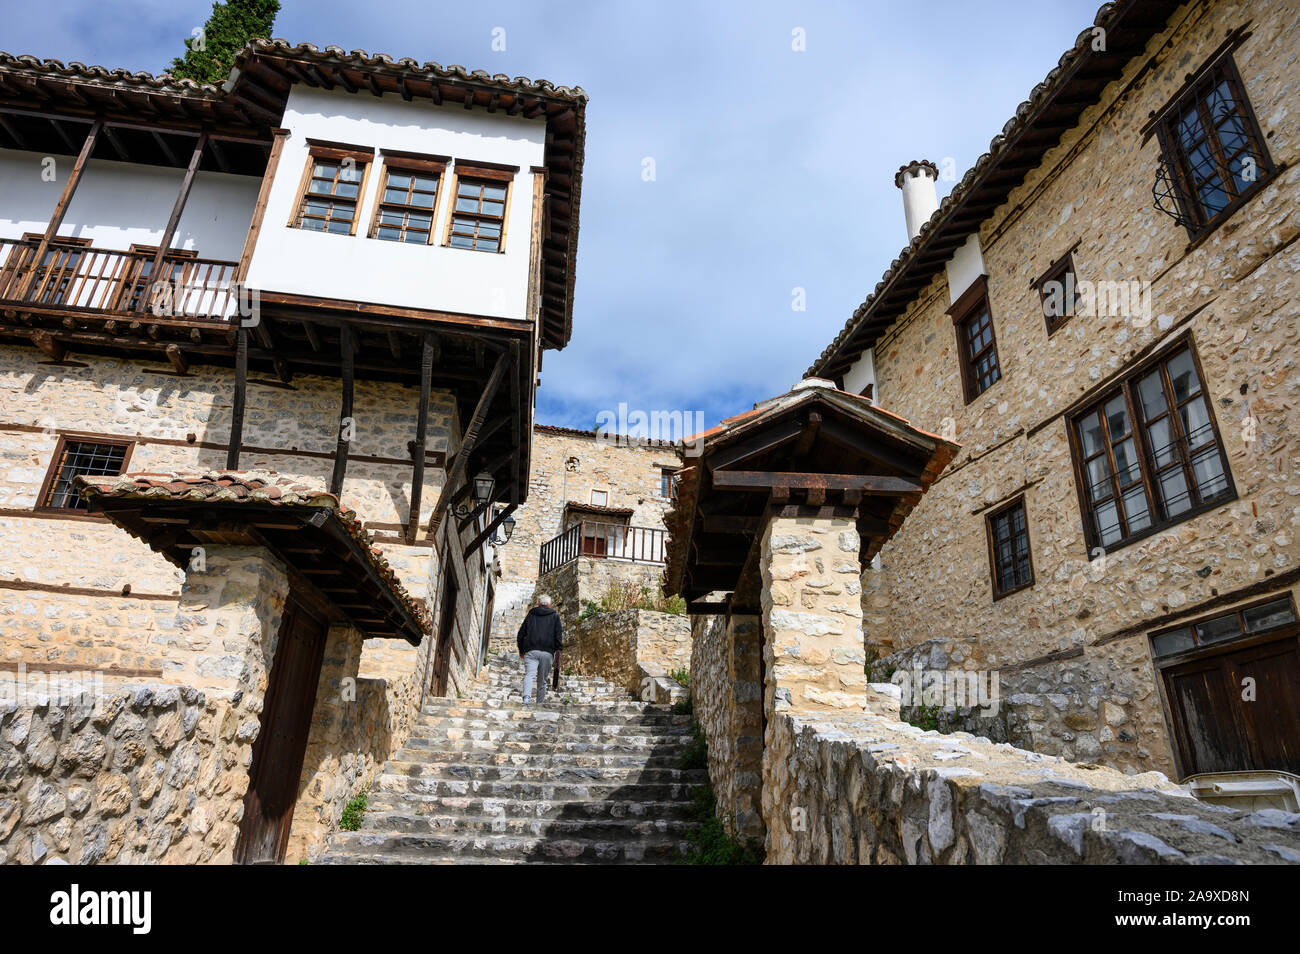 Alten osmanischen Häusern und gepflasterten Straßen in der alten Doltso Bezirk von Kastoria, Mazedonien, im Norden Griechenlands. Stockfoto